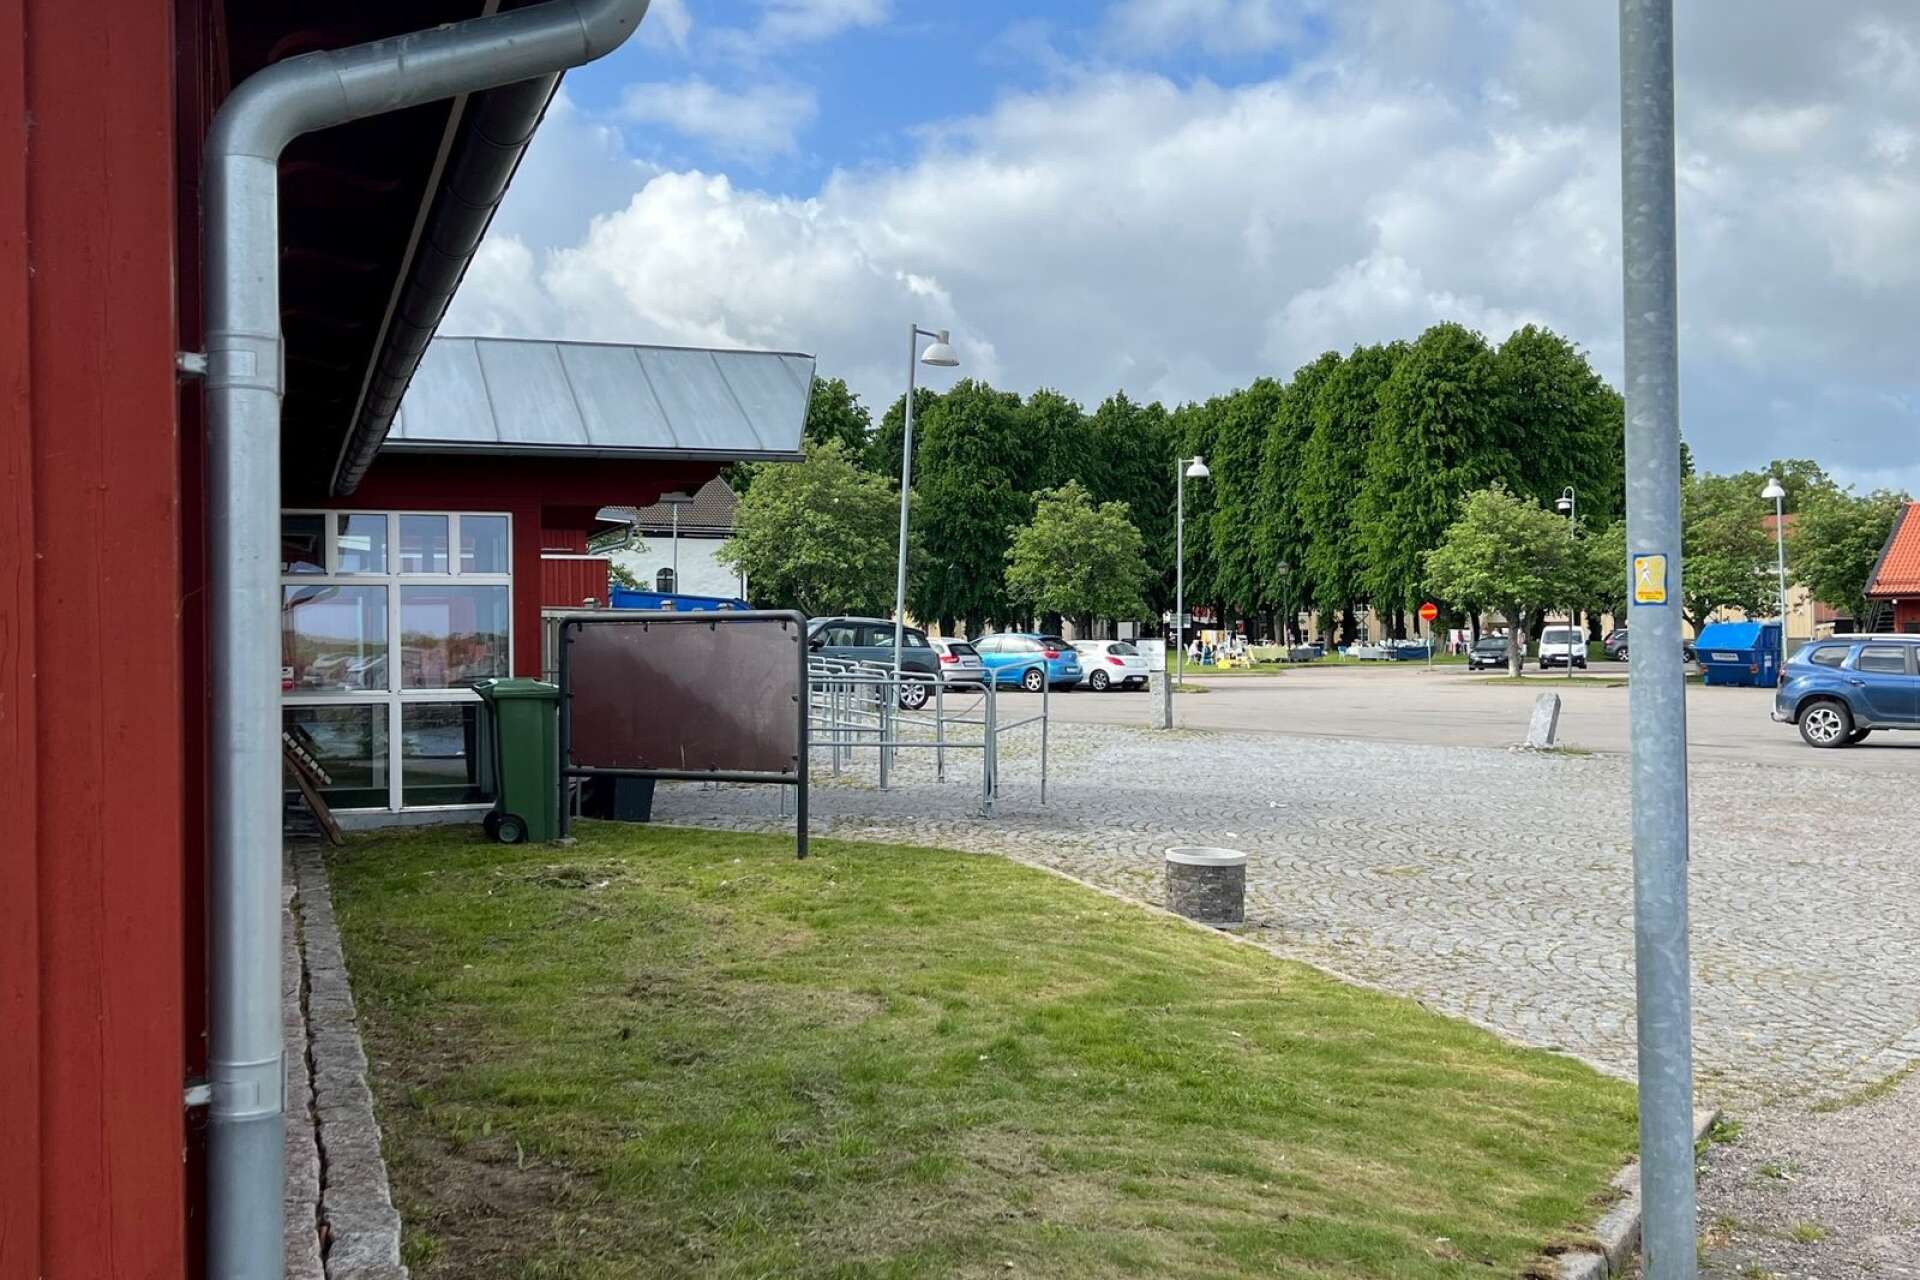 Det misstänkta mordförsöket skedde på natten till den 11 juni vid Södra hamnplan i Åmål, utanför hamnkrogen Dalslands skafferi som höll studentfest. Nu har rättegången avslutats.